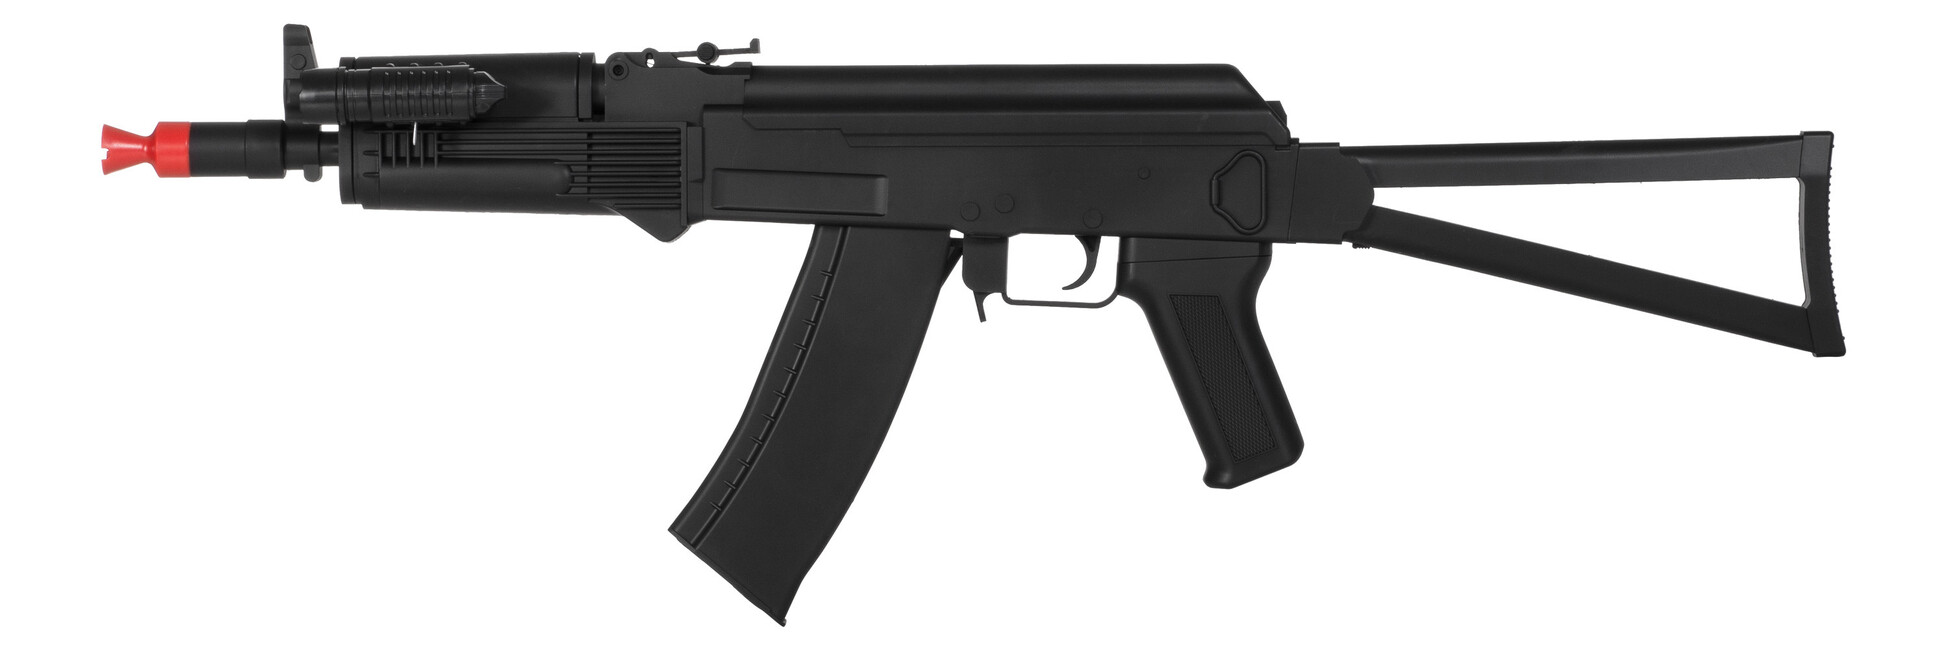 ak47 airsoft gun